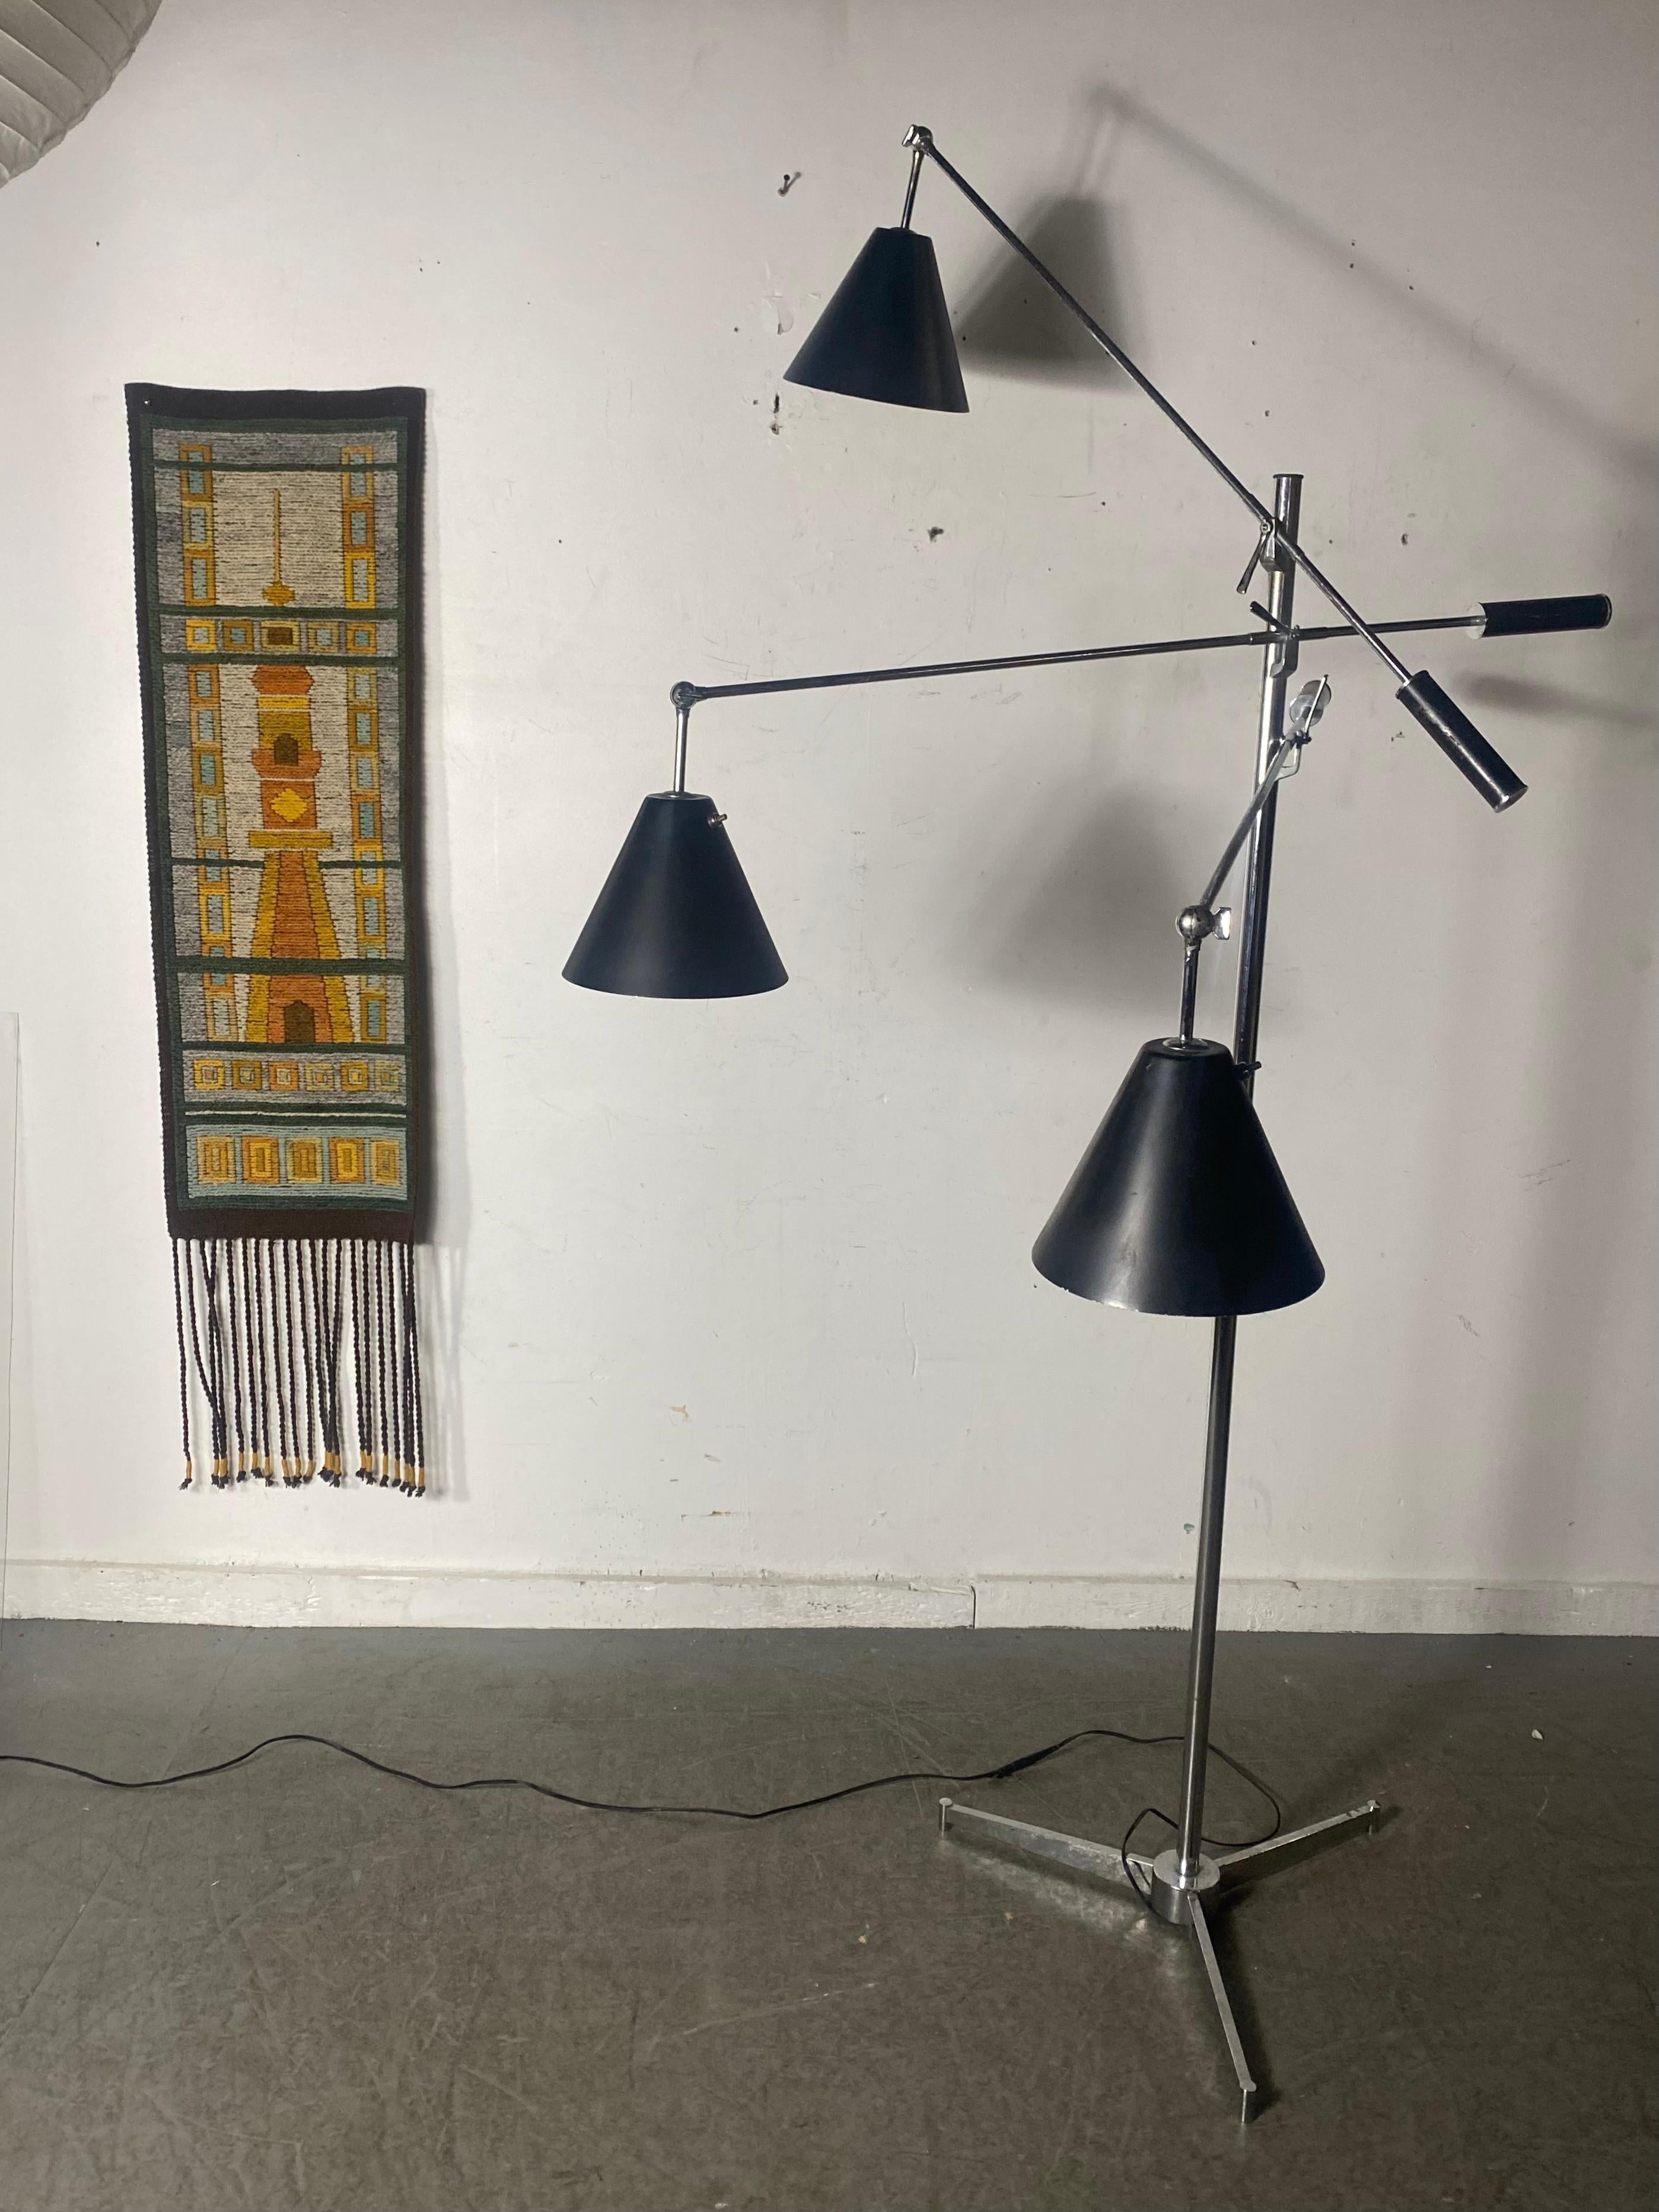 Un lampadaire emblématique conçu par Angelo Lelli pour Arredoluce, exposé pour la première fois à l'exposition Triennale de Milan en 1951.
Le Triennale est une conception d'éclairage sculpturale avec des dispositifs de serrage pour les abat-jour